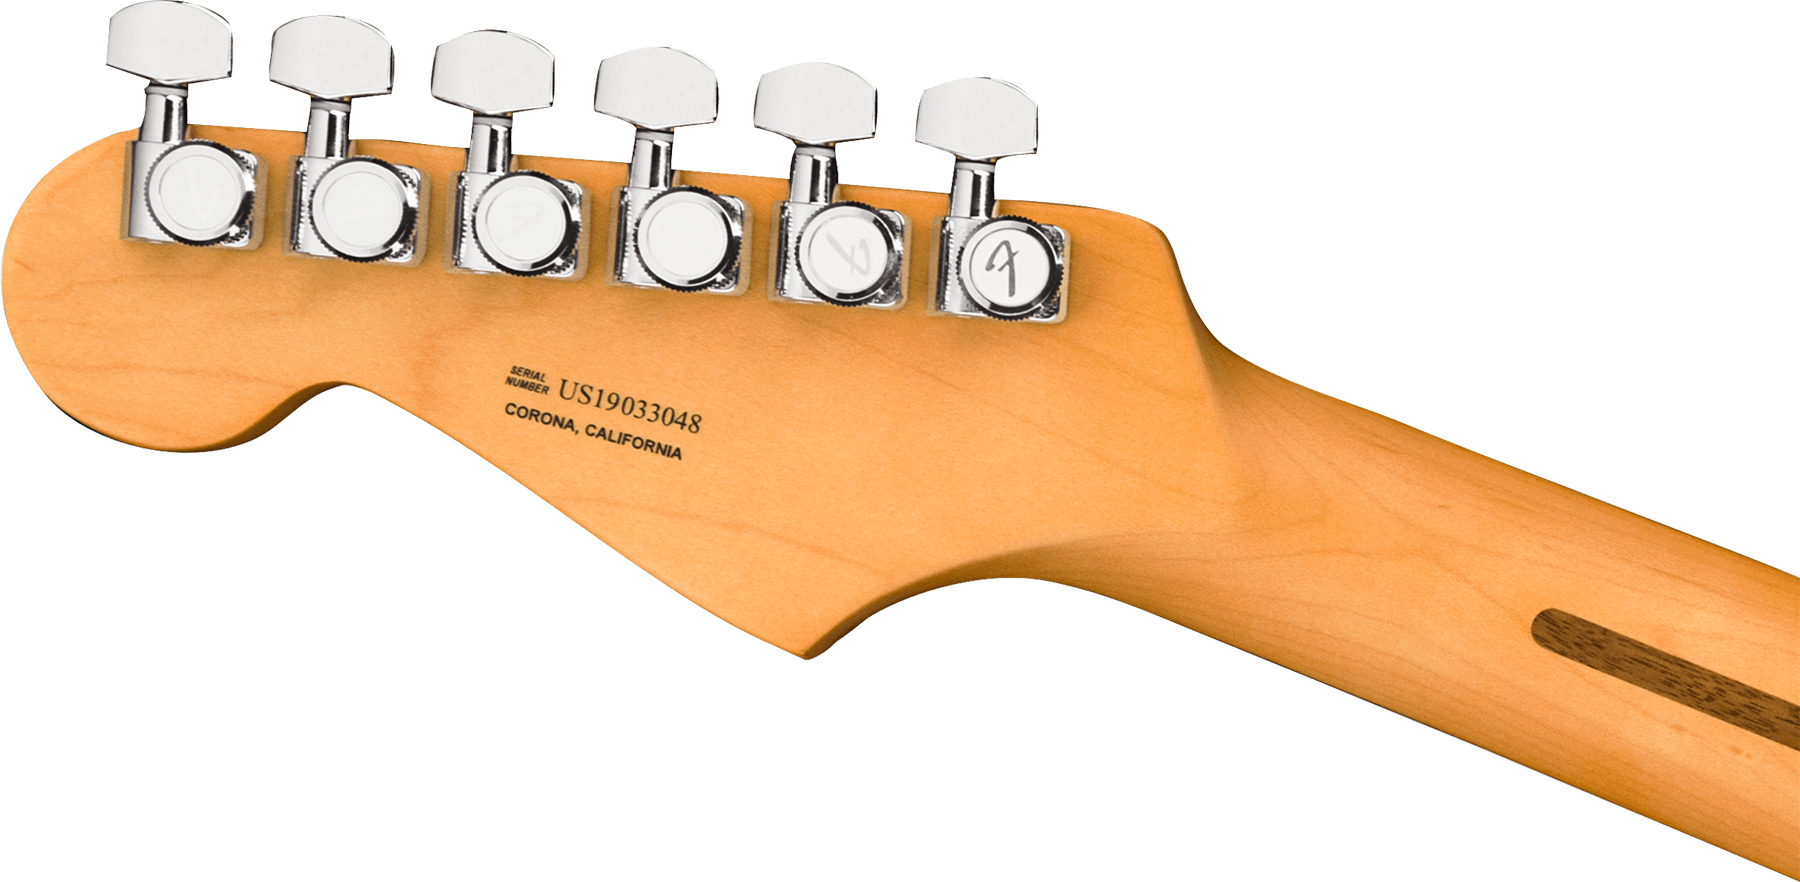 Fender Strat American Ultra Hss 2019 Usa Mn - Ultraburst - Guitarra eléctrica con forma de str. - Variation 3